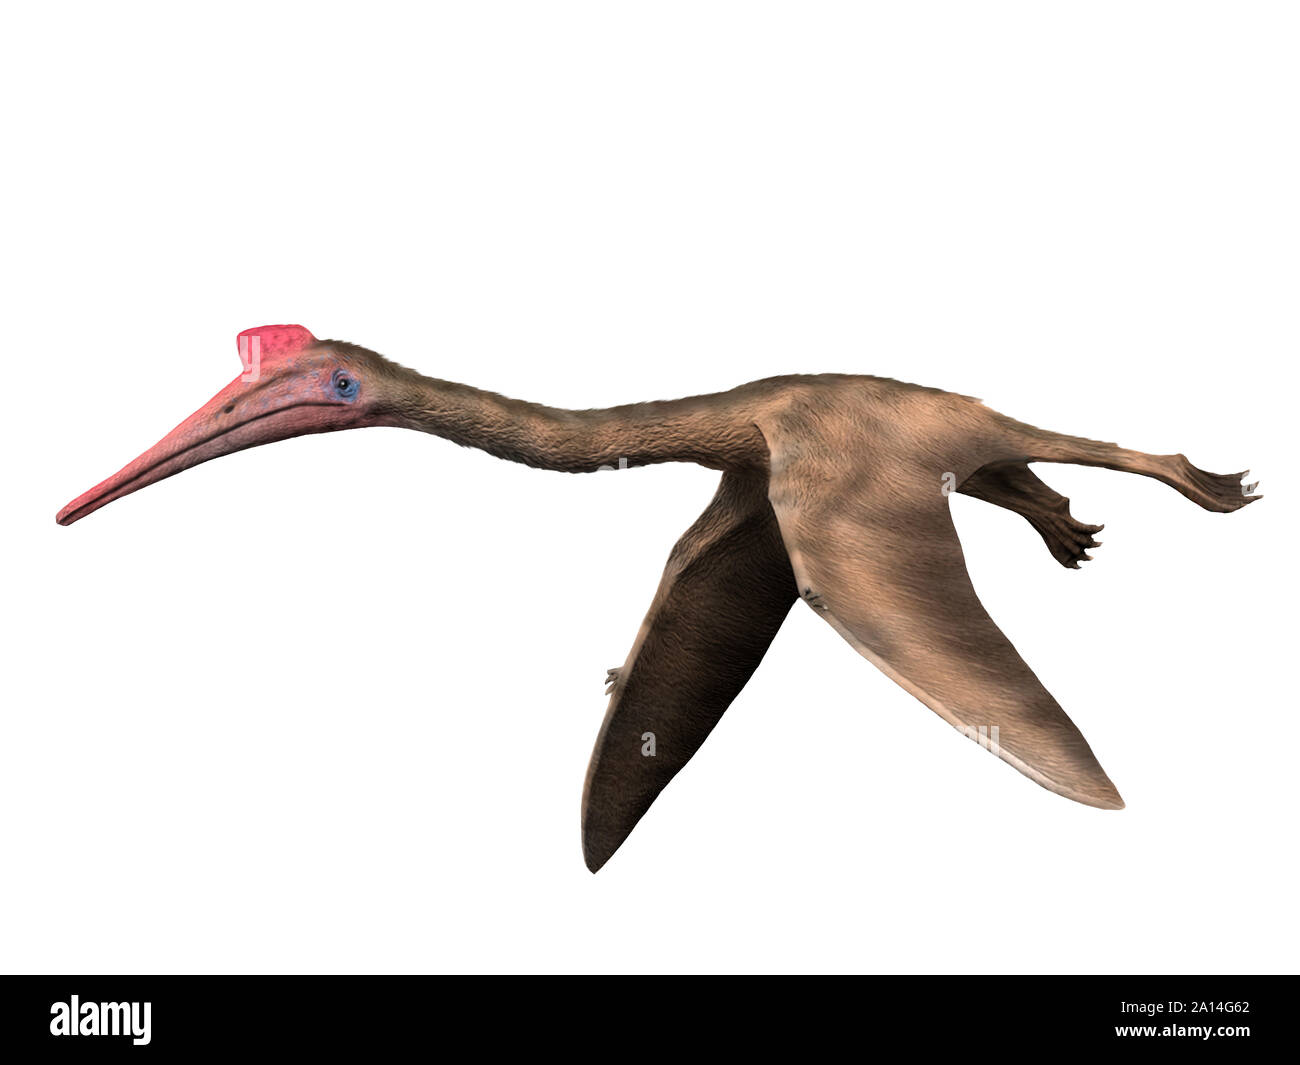 Quetzalcoatlus northropi pterosaur on white background. Stock Photo